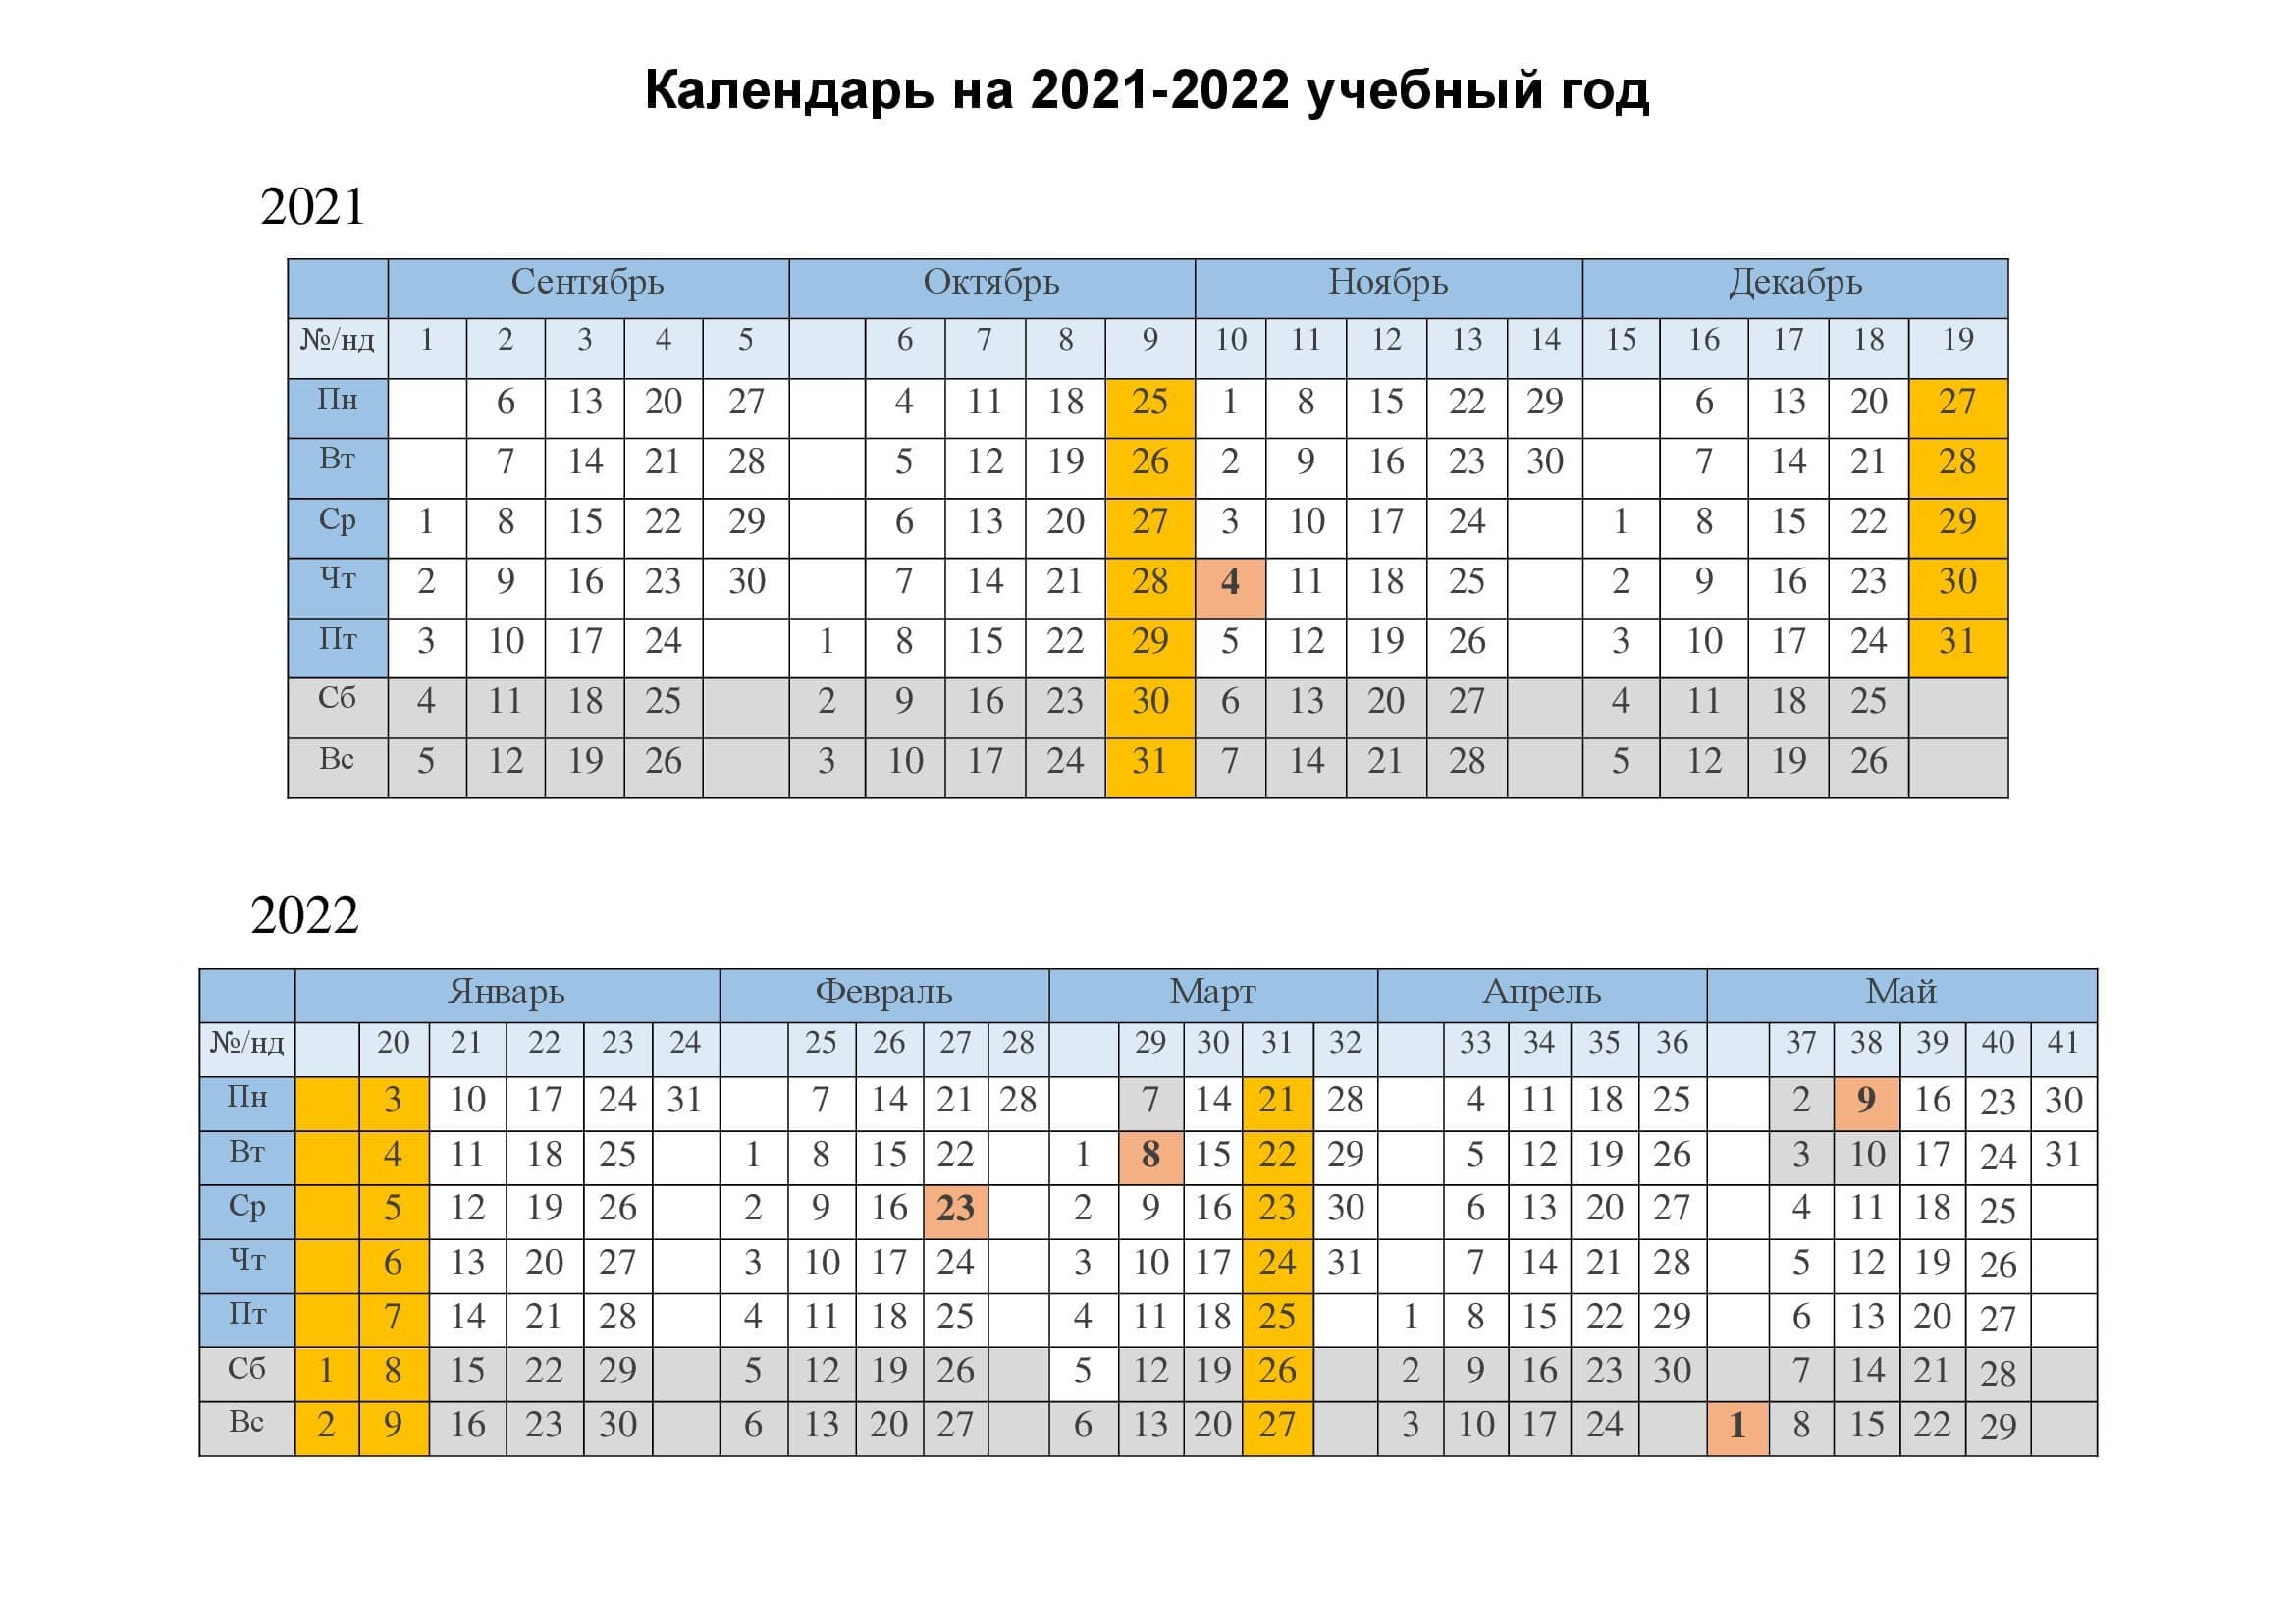 2021 kalendar 2021. Kalendar